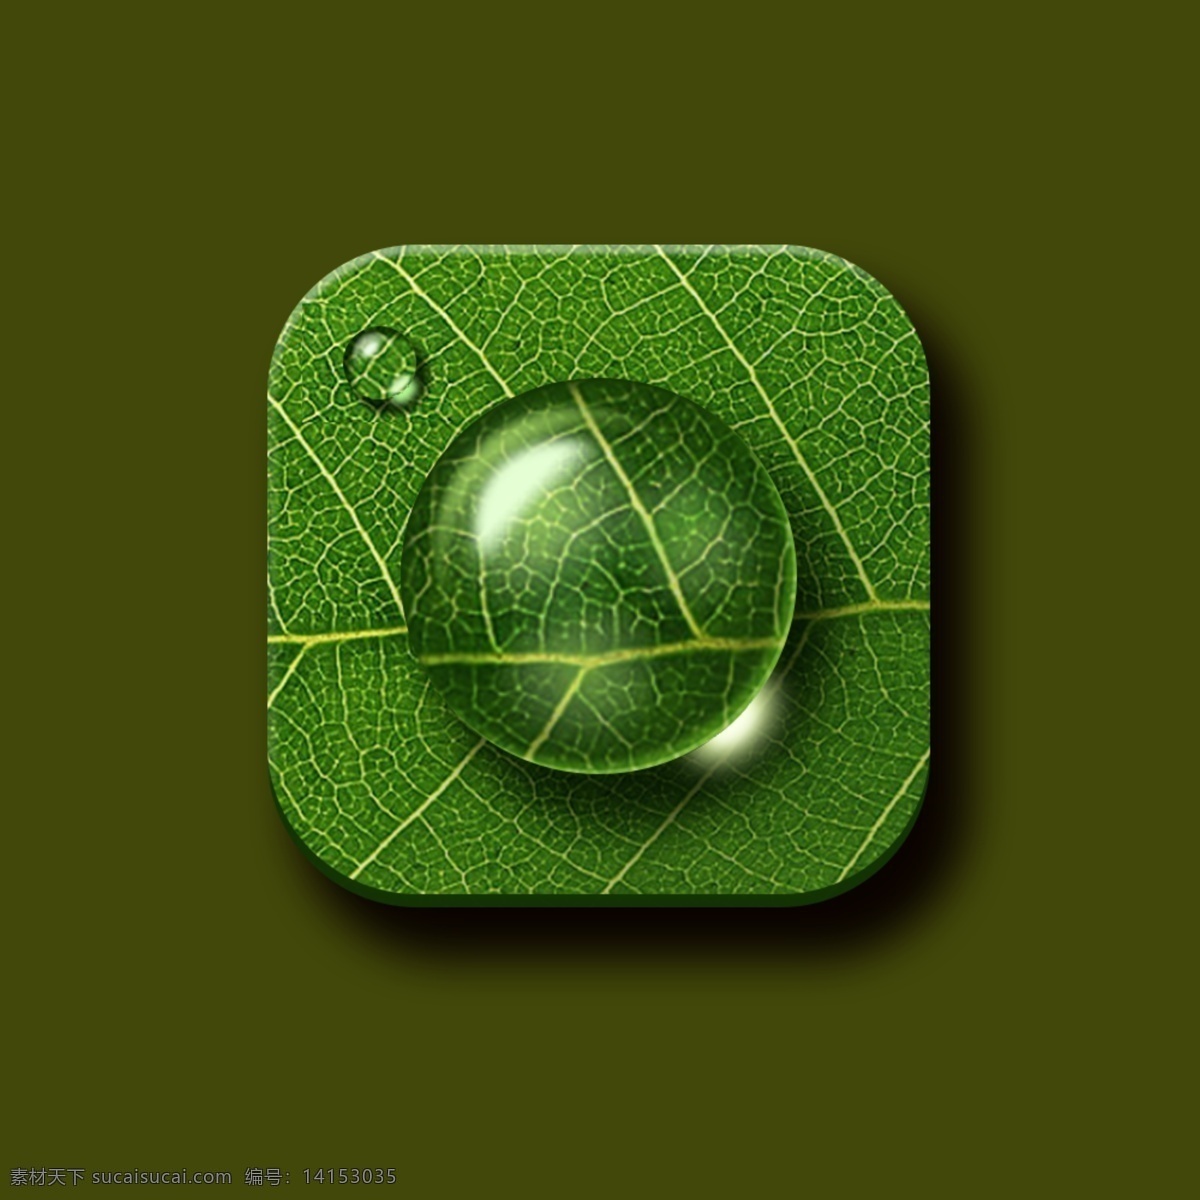 水滴 透明 仿真 型 手机 icon 图标 元素 树叶 绿色 写真 光照